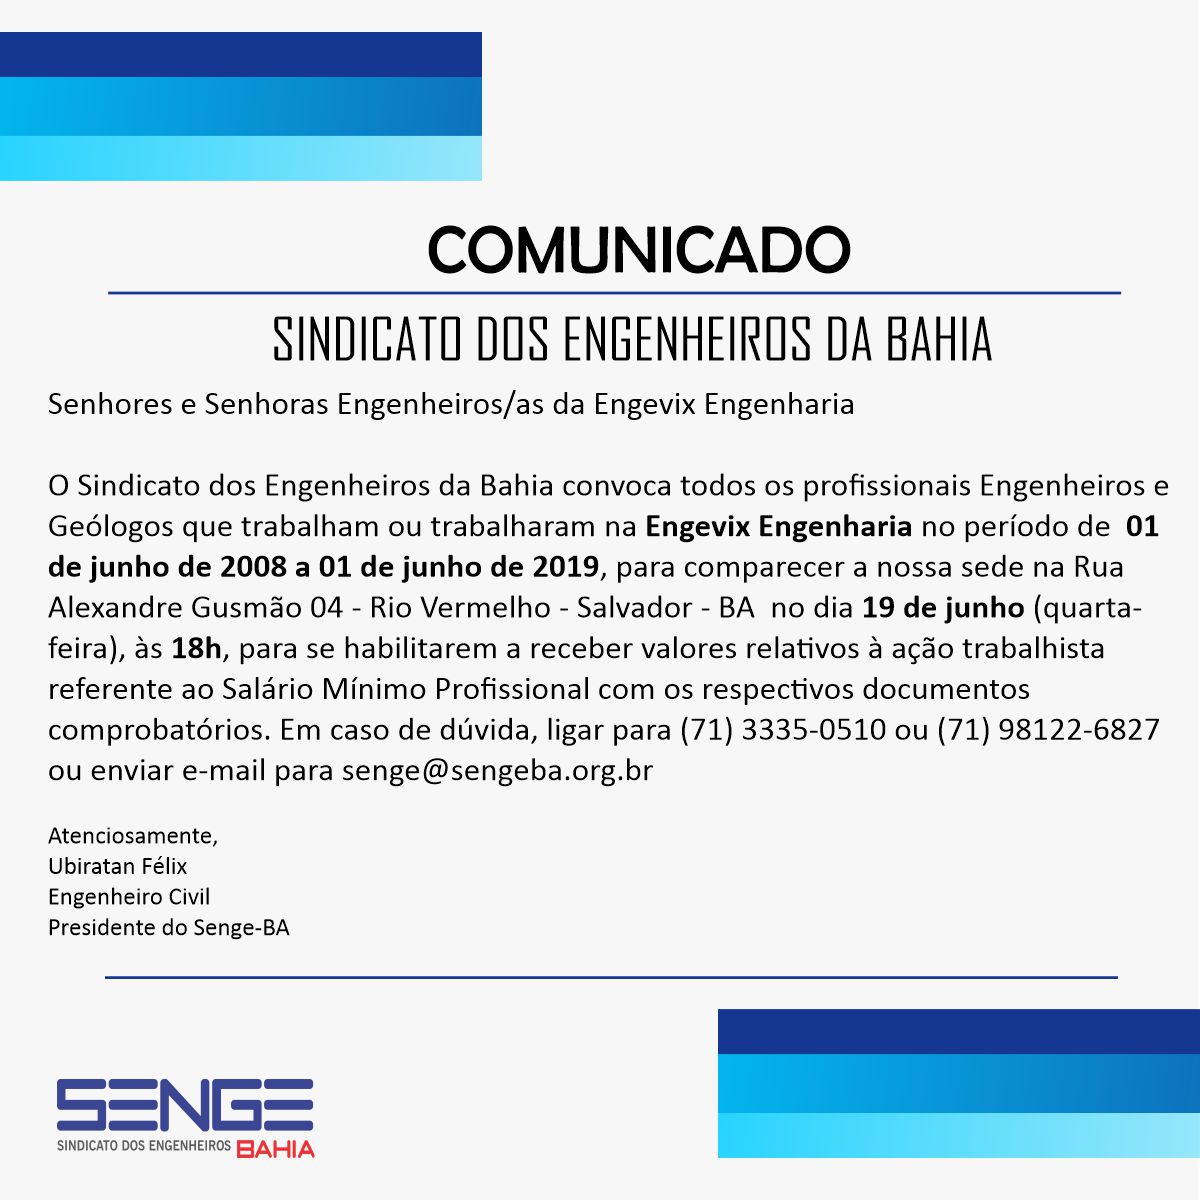 Convocatória do Senge-BA para profissionais da Engevix Engenharia – Conquista do Salário Mínimo Profissional